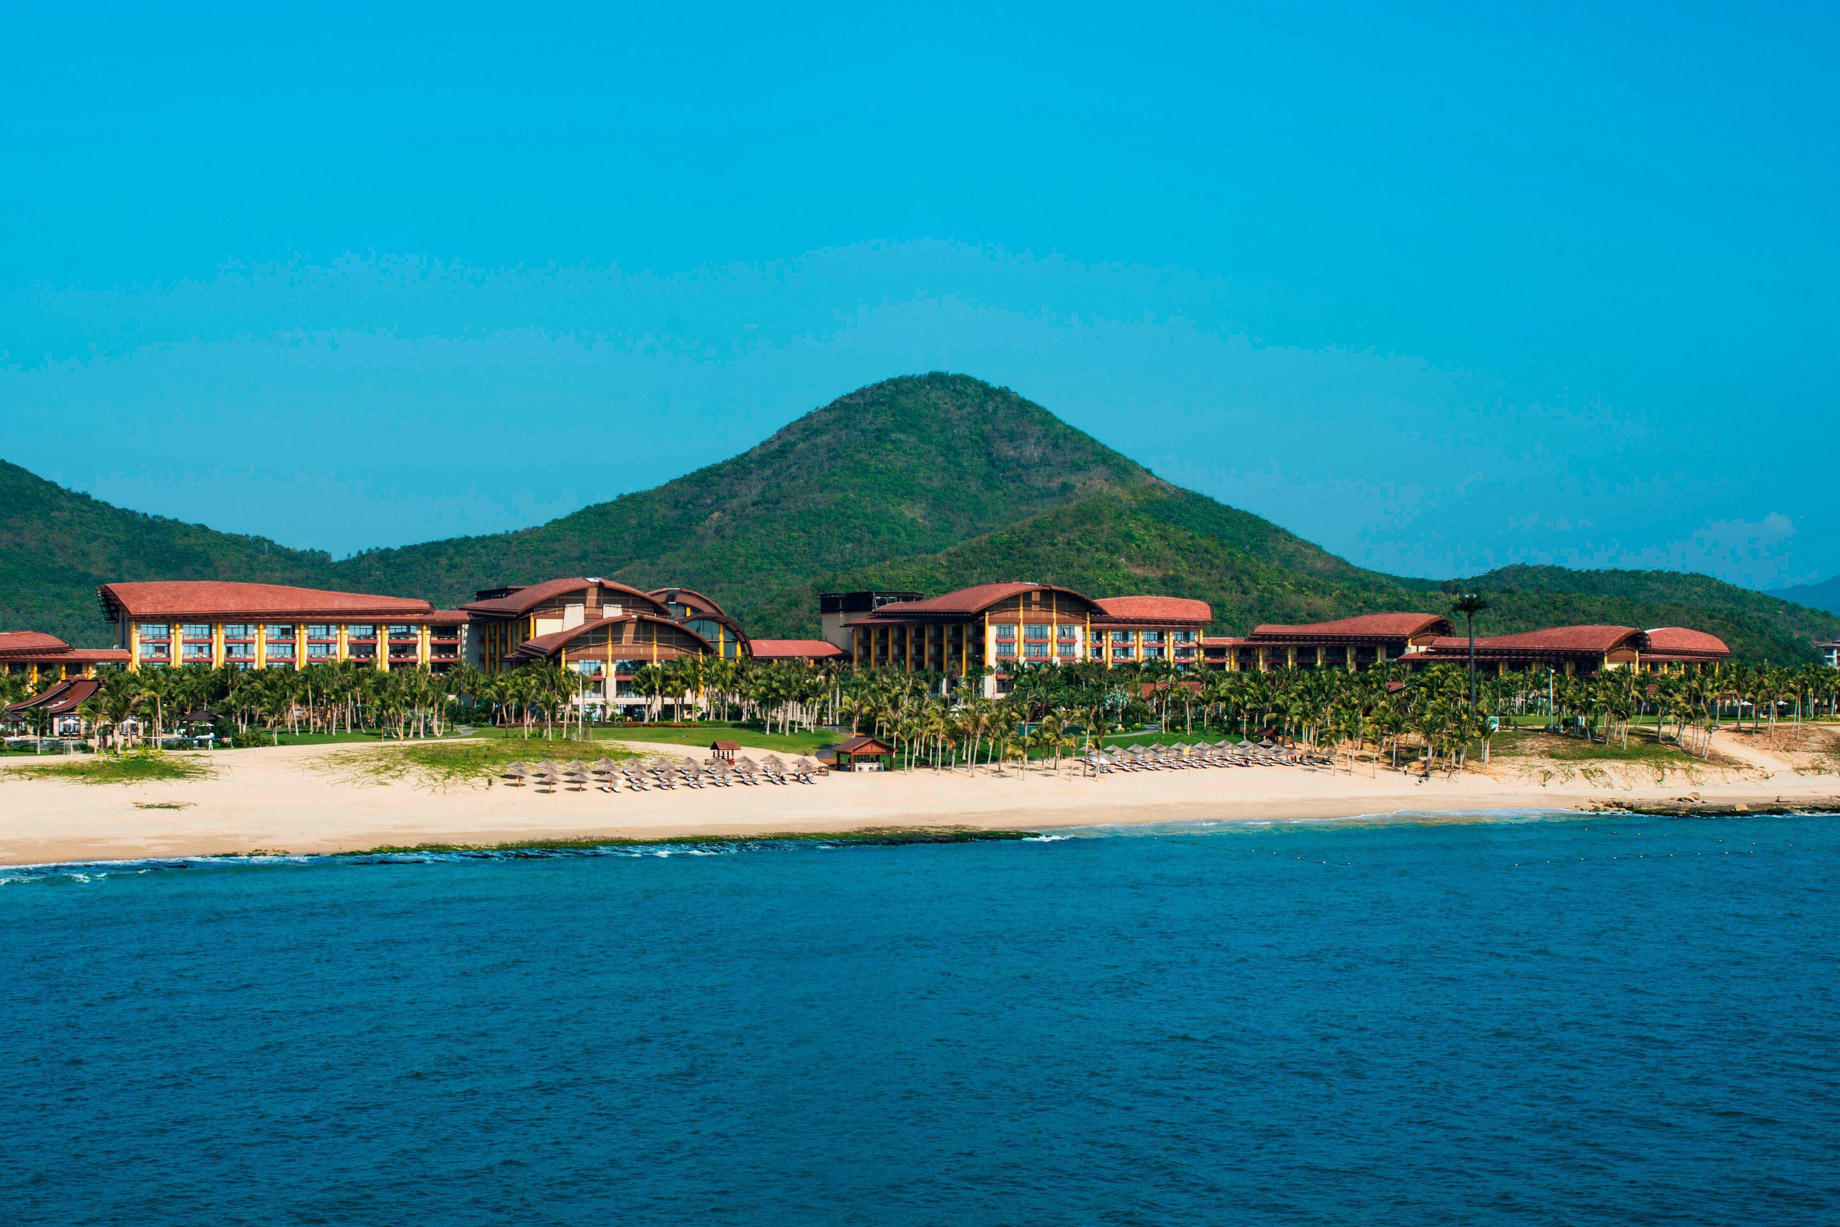 The St. Regis Sanya Yalong Bay Resort - Hainan, China - Yalong Bay Resort Beach View Aerial